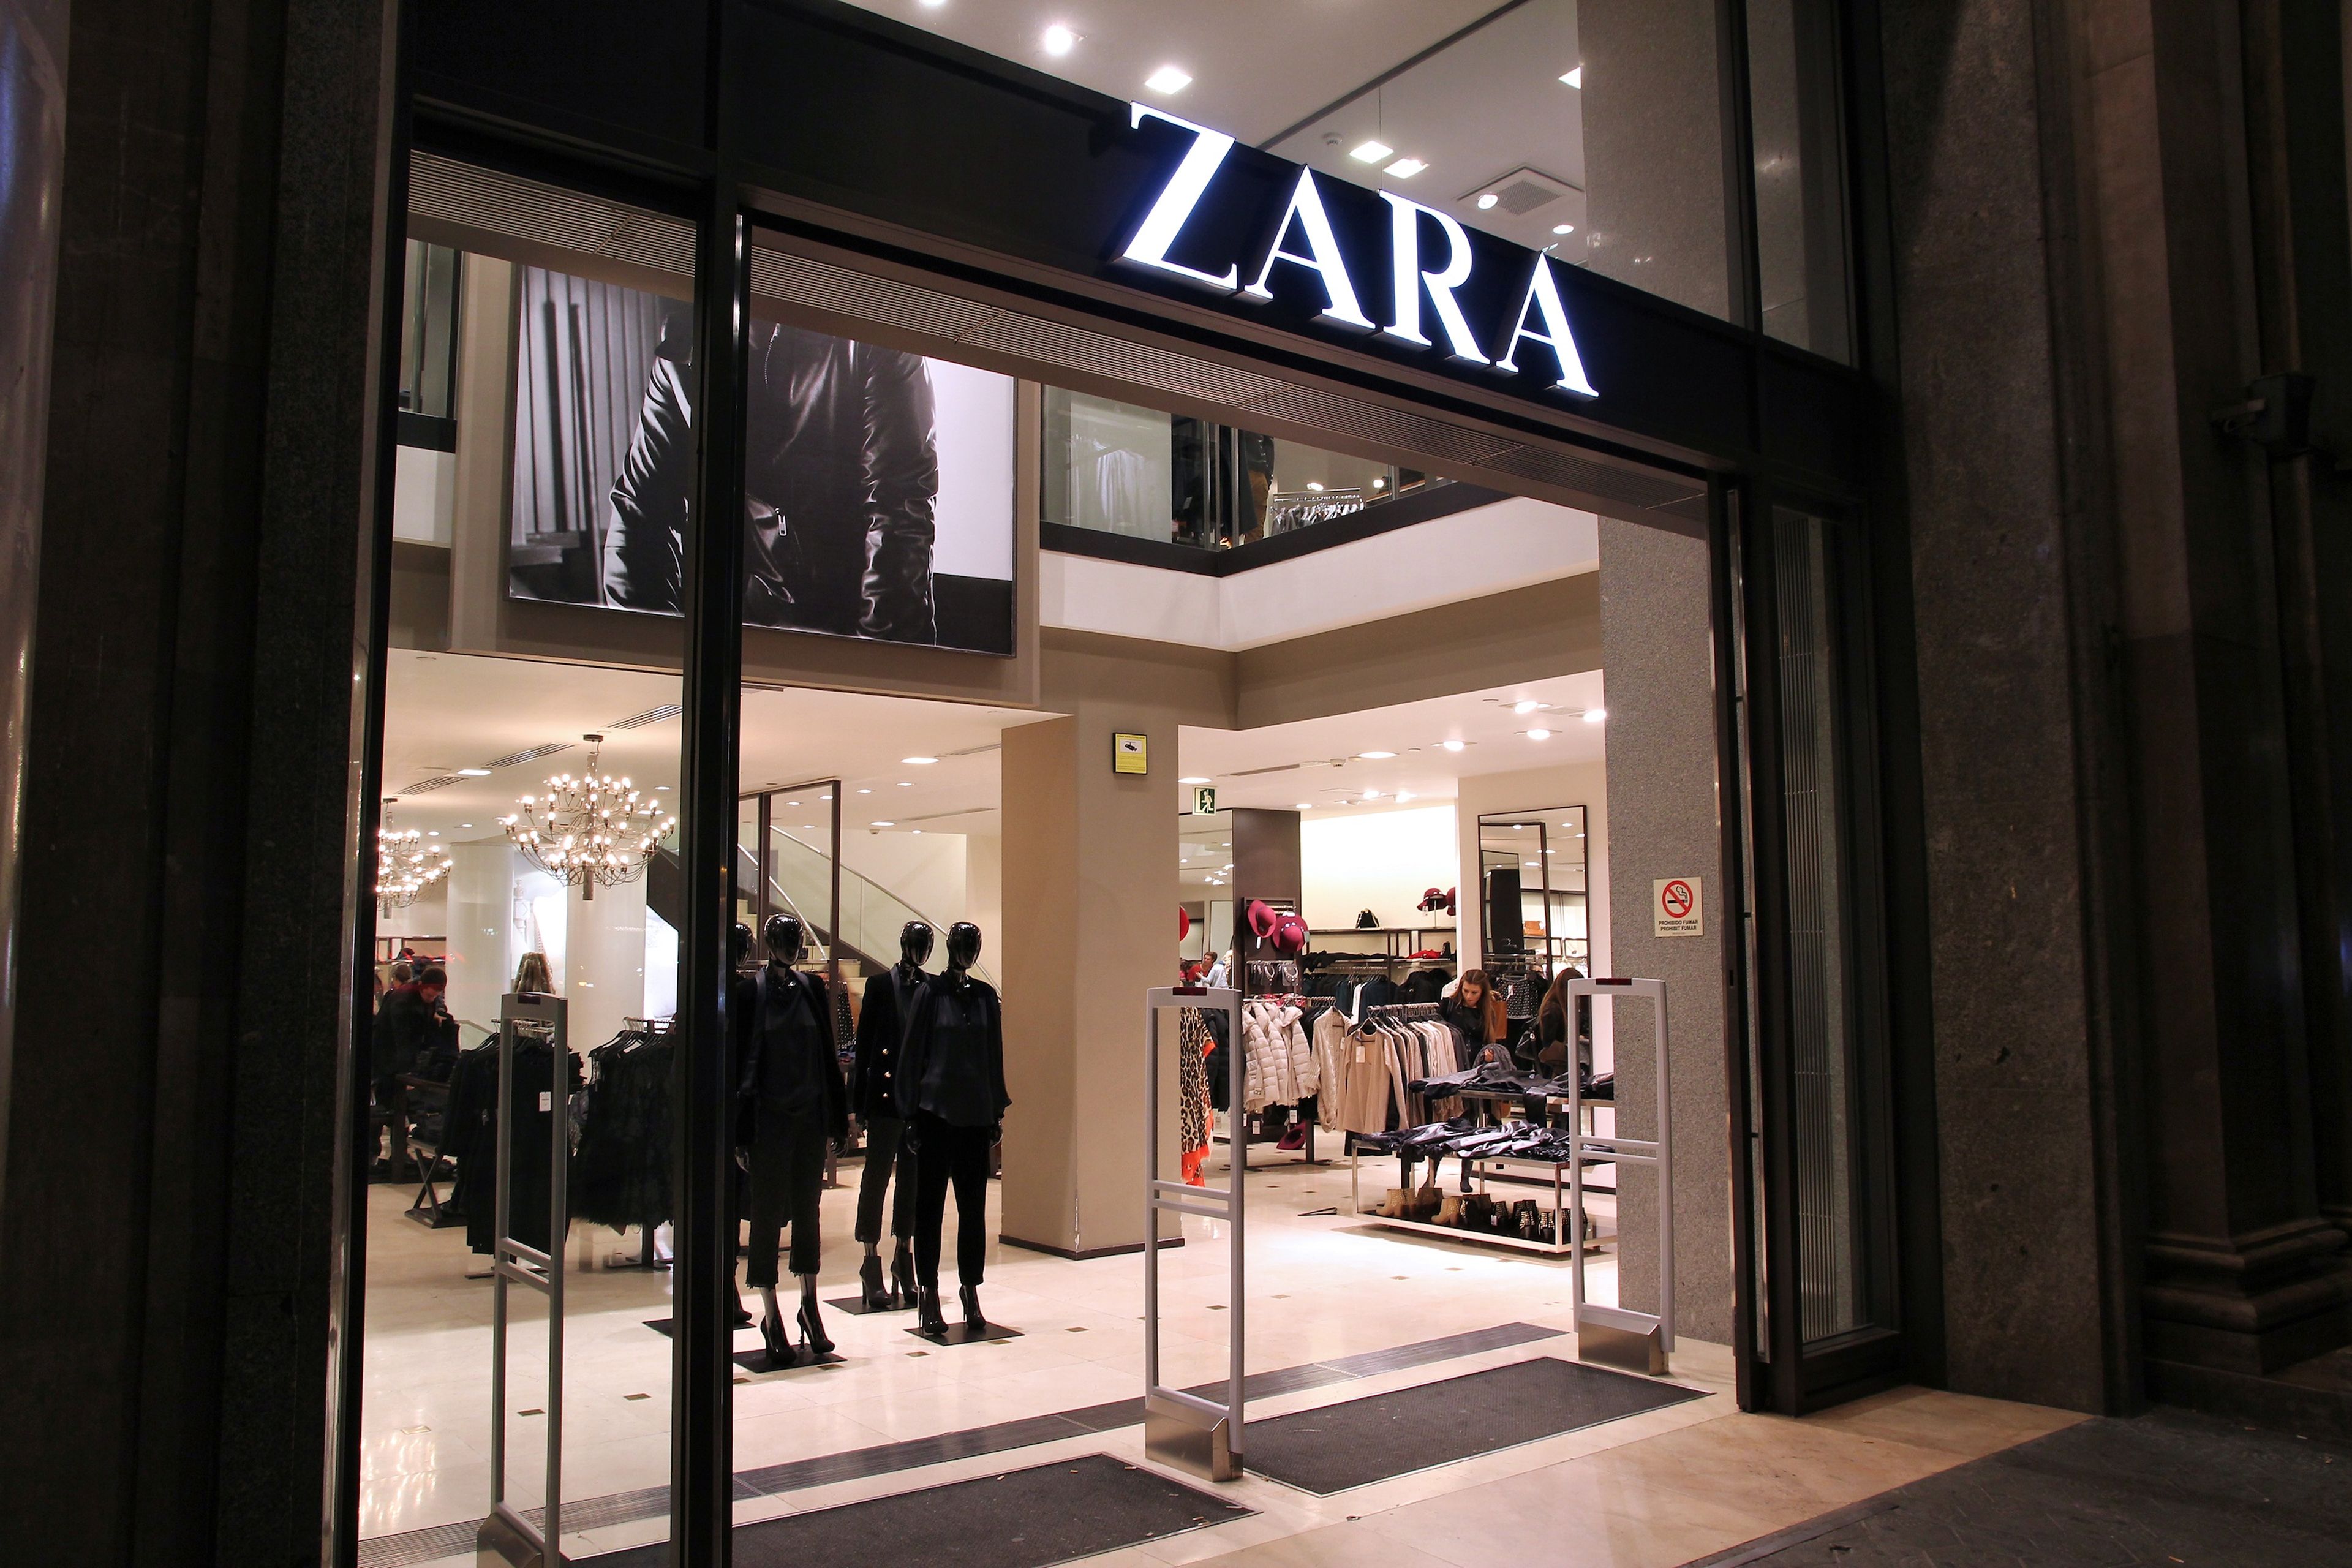 Tienda de Zara en Barcelona.